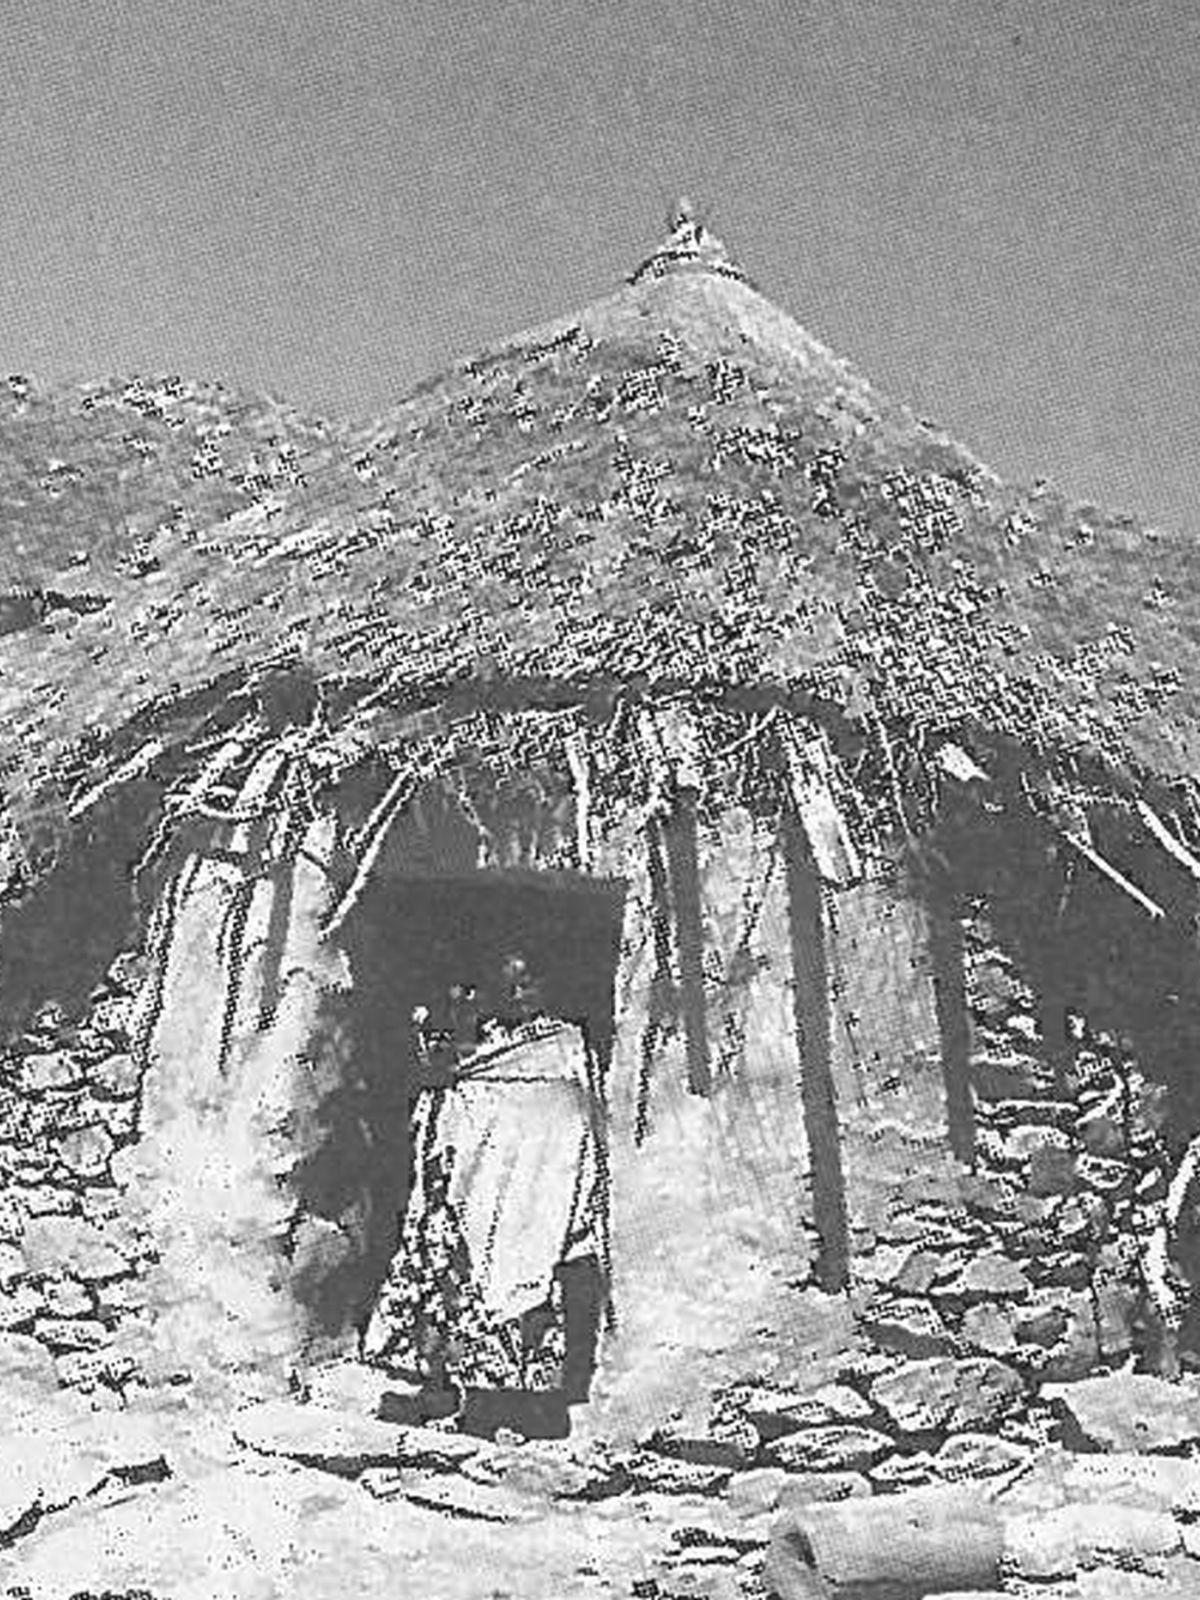  Schopflocher Skizzen Wohnhütte Gondar - Bild wird mit einem klick vergrößert 